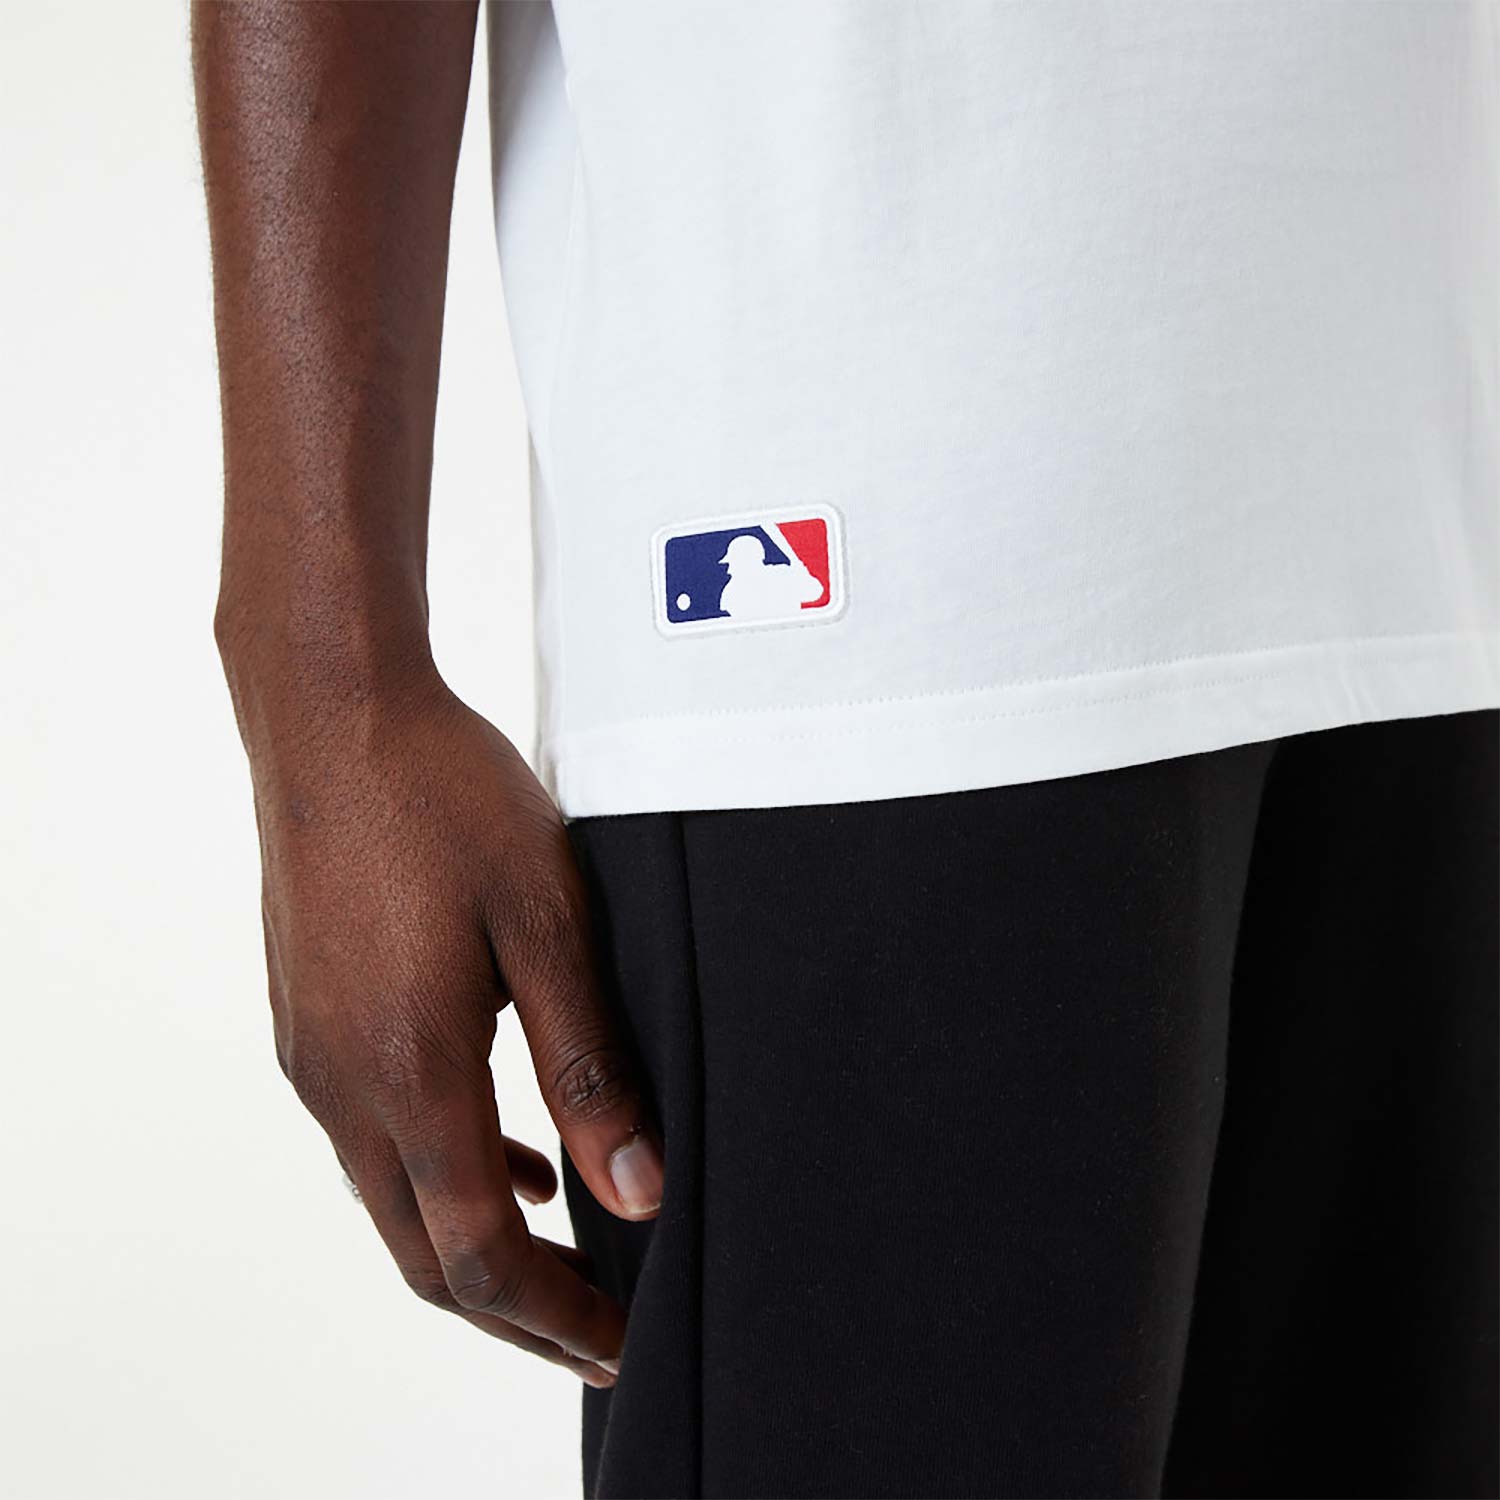 New Era - LA Dodgers League Essential T-shirt